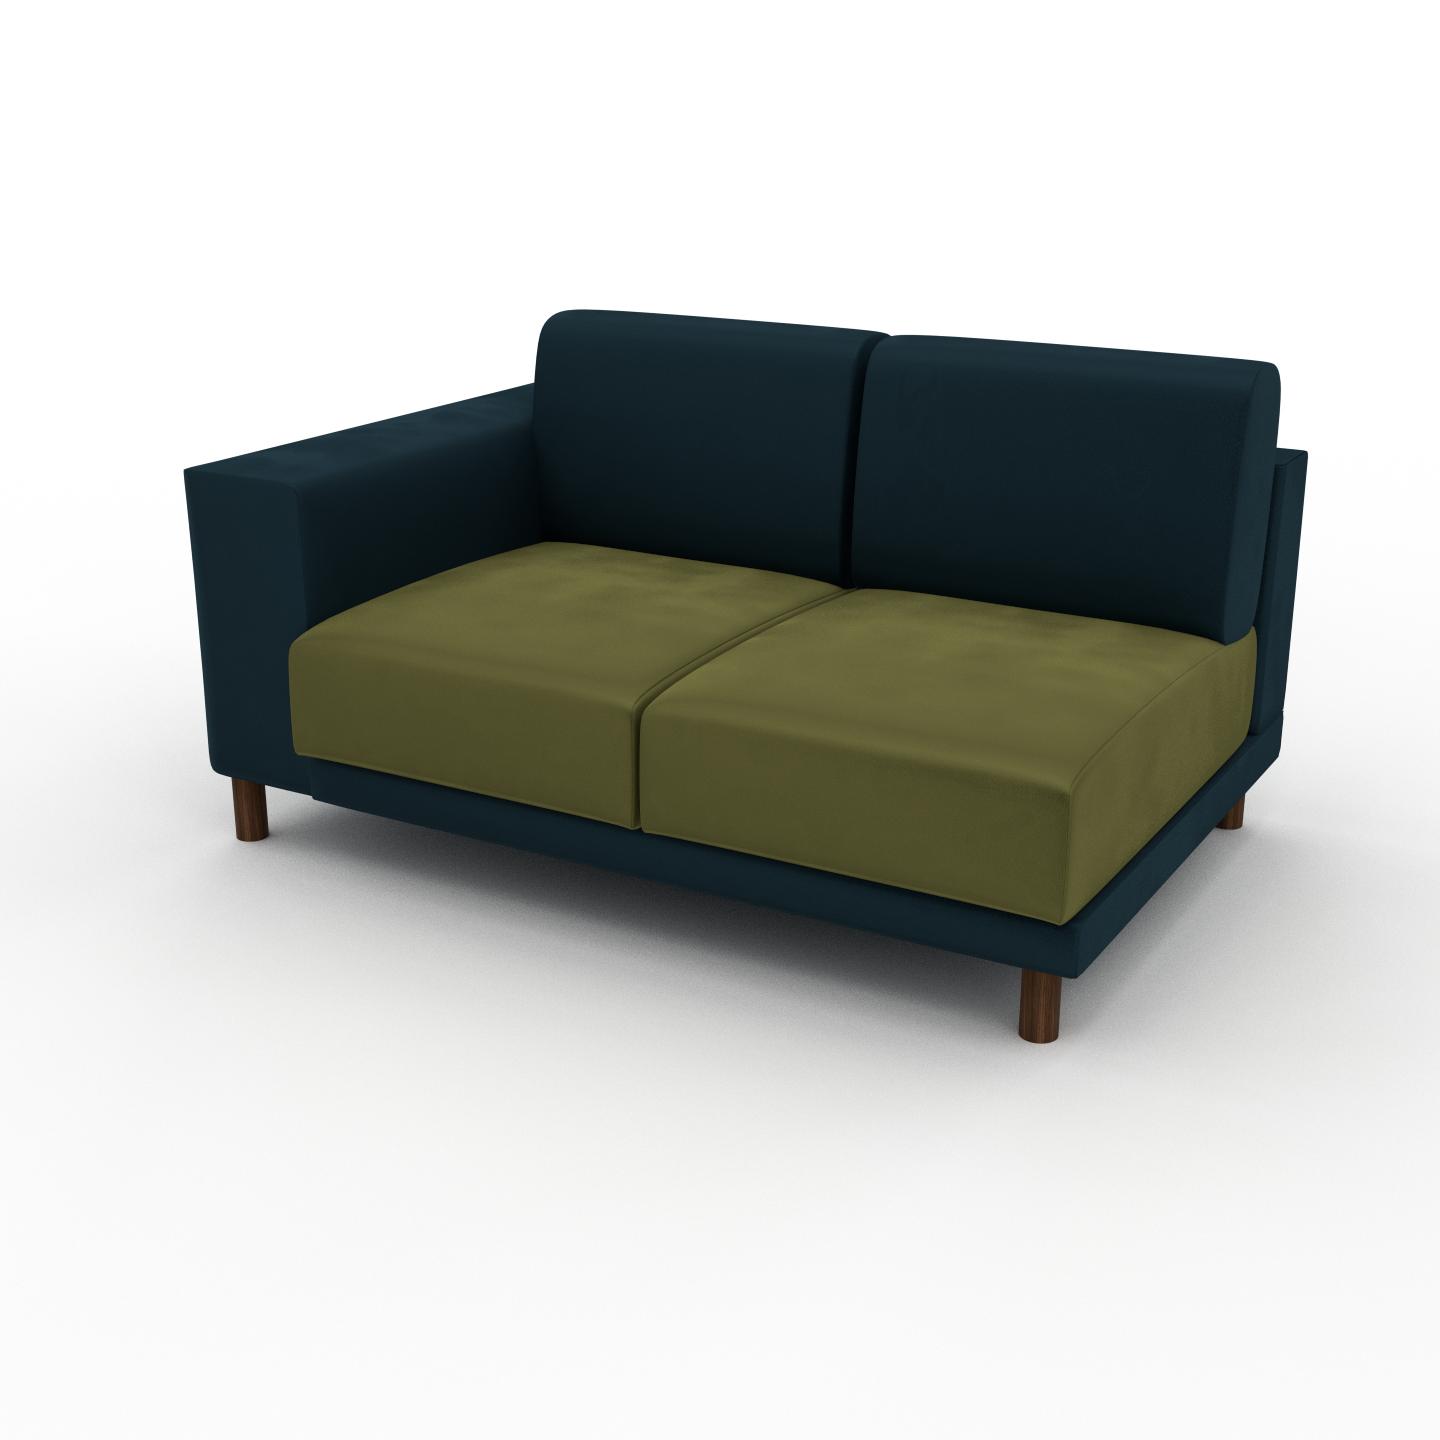 MYCS Sofa Samt Olivgrün - Moderne Designer-Couch: Hochwertige Qualität, einzigartiges Design - 144 x 75 x 98 cm, Komplett anpassbar